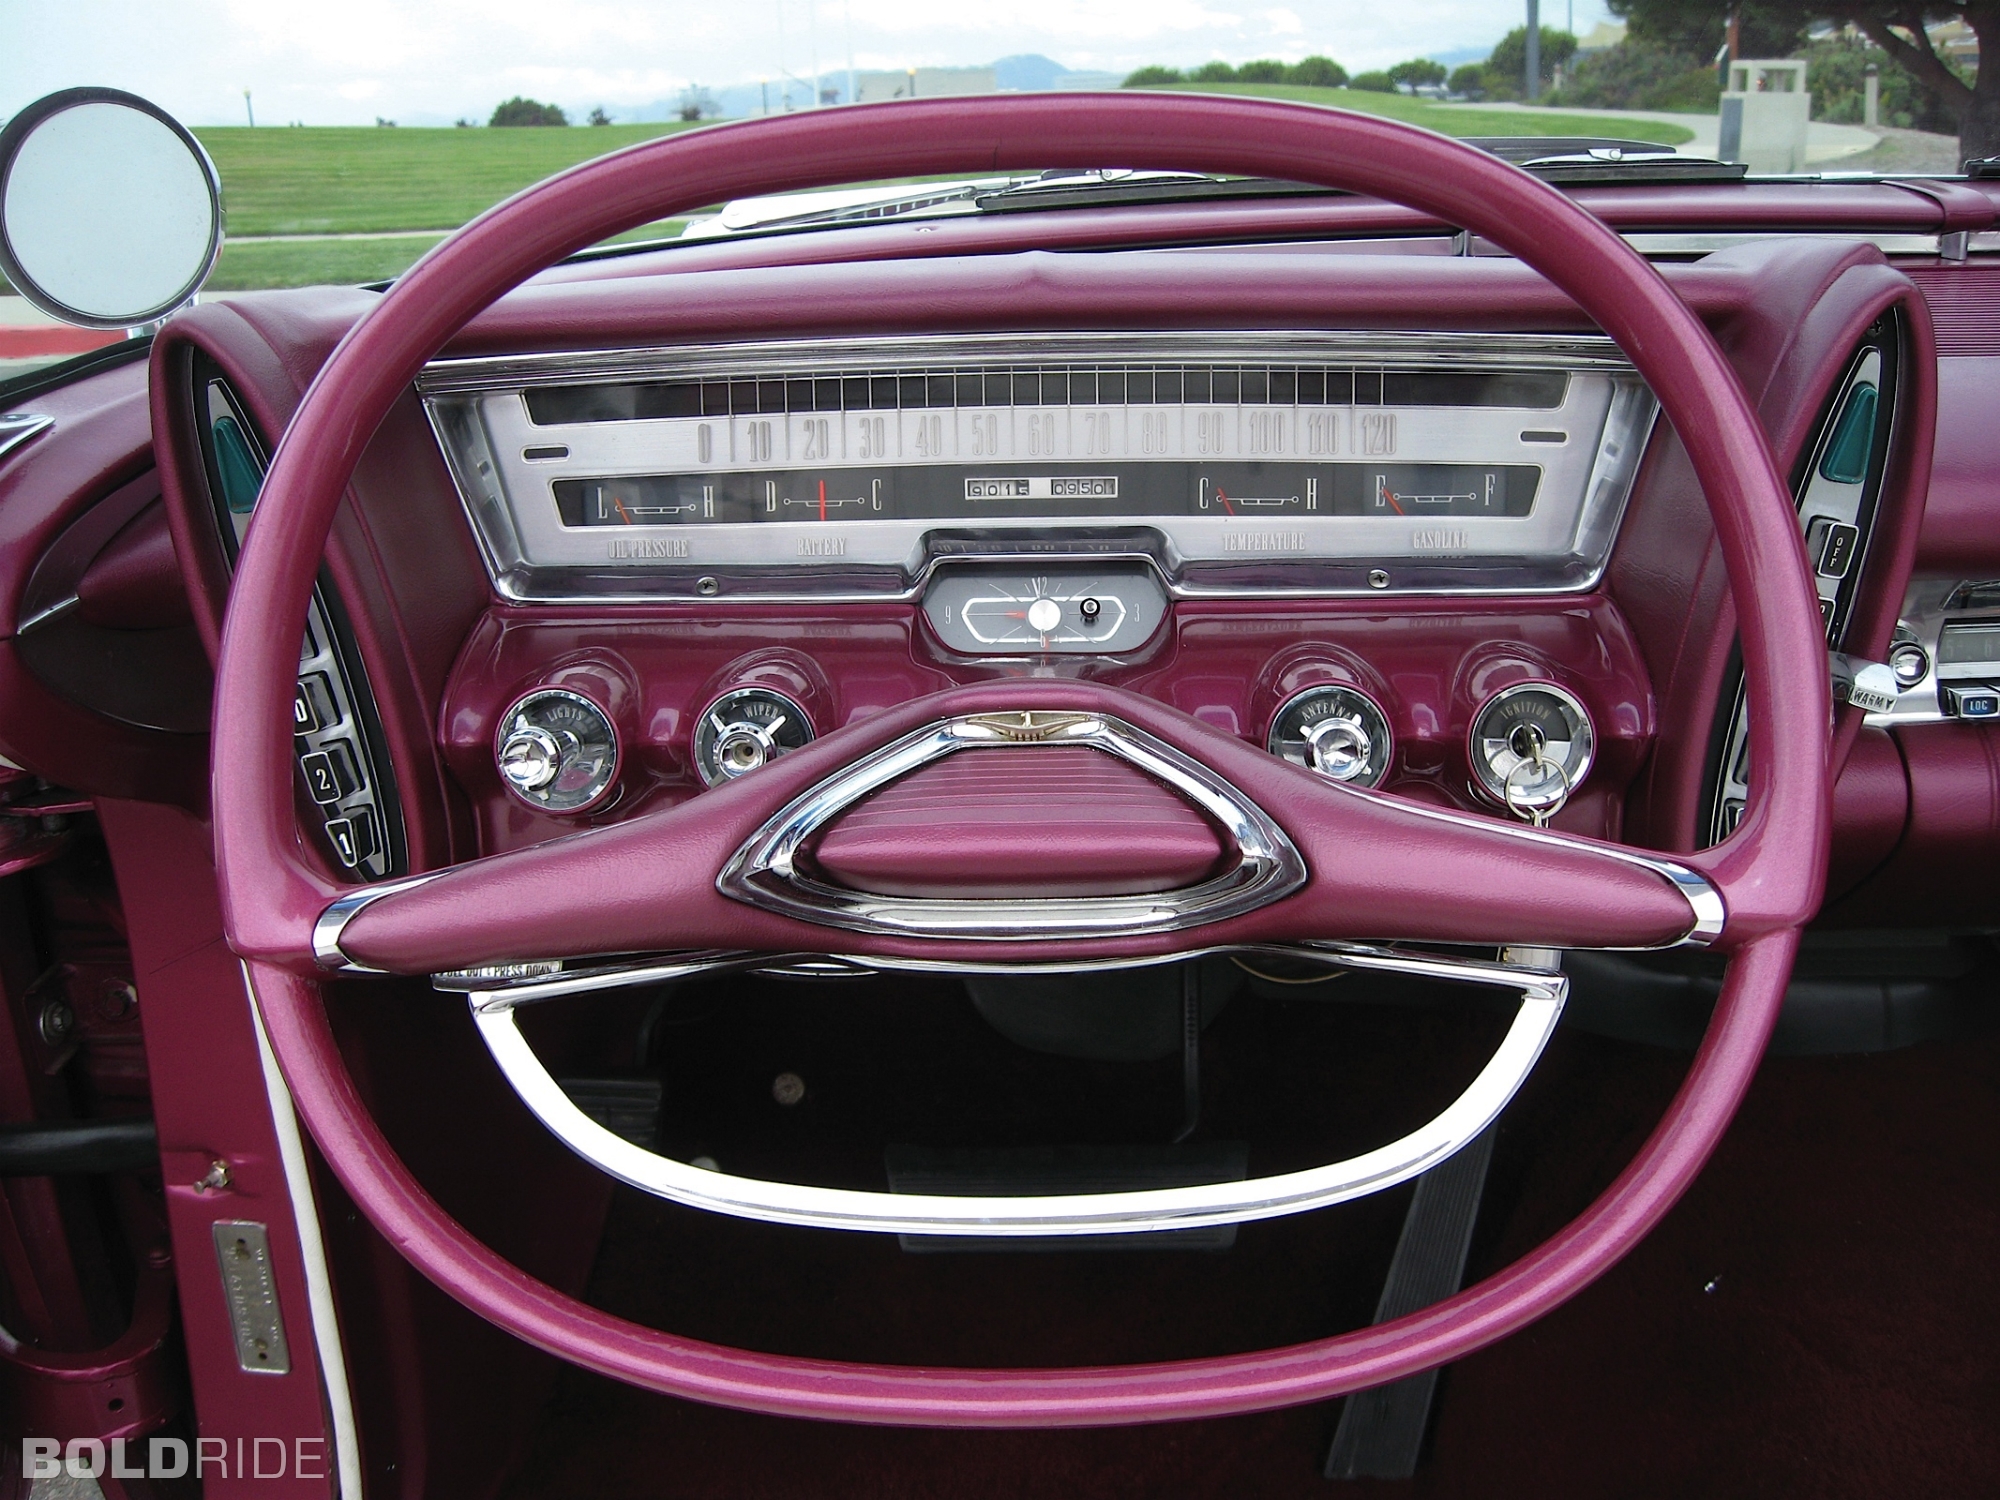 1961 Chrysler Imperial Crown Cabriolet Boldride.com - Des photos...